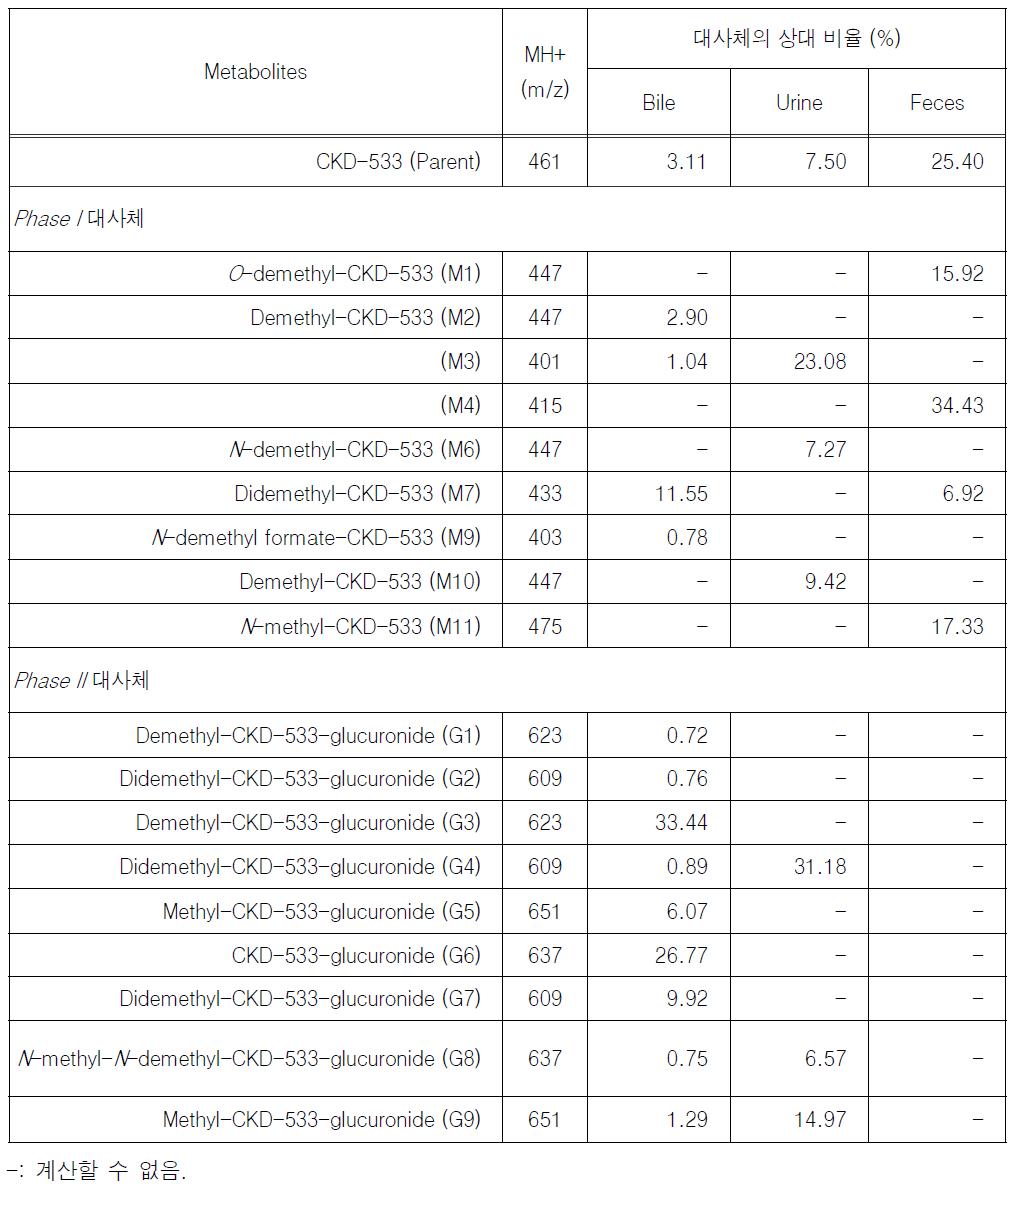 랫드에 CKD-533을 10 mg/kg으로 단회 경구 투여 후의 CKD-533과 대사체의 상대 비율